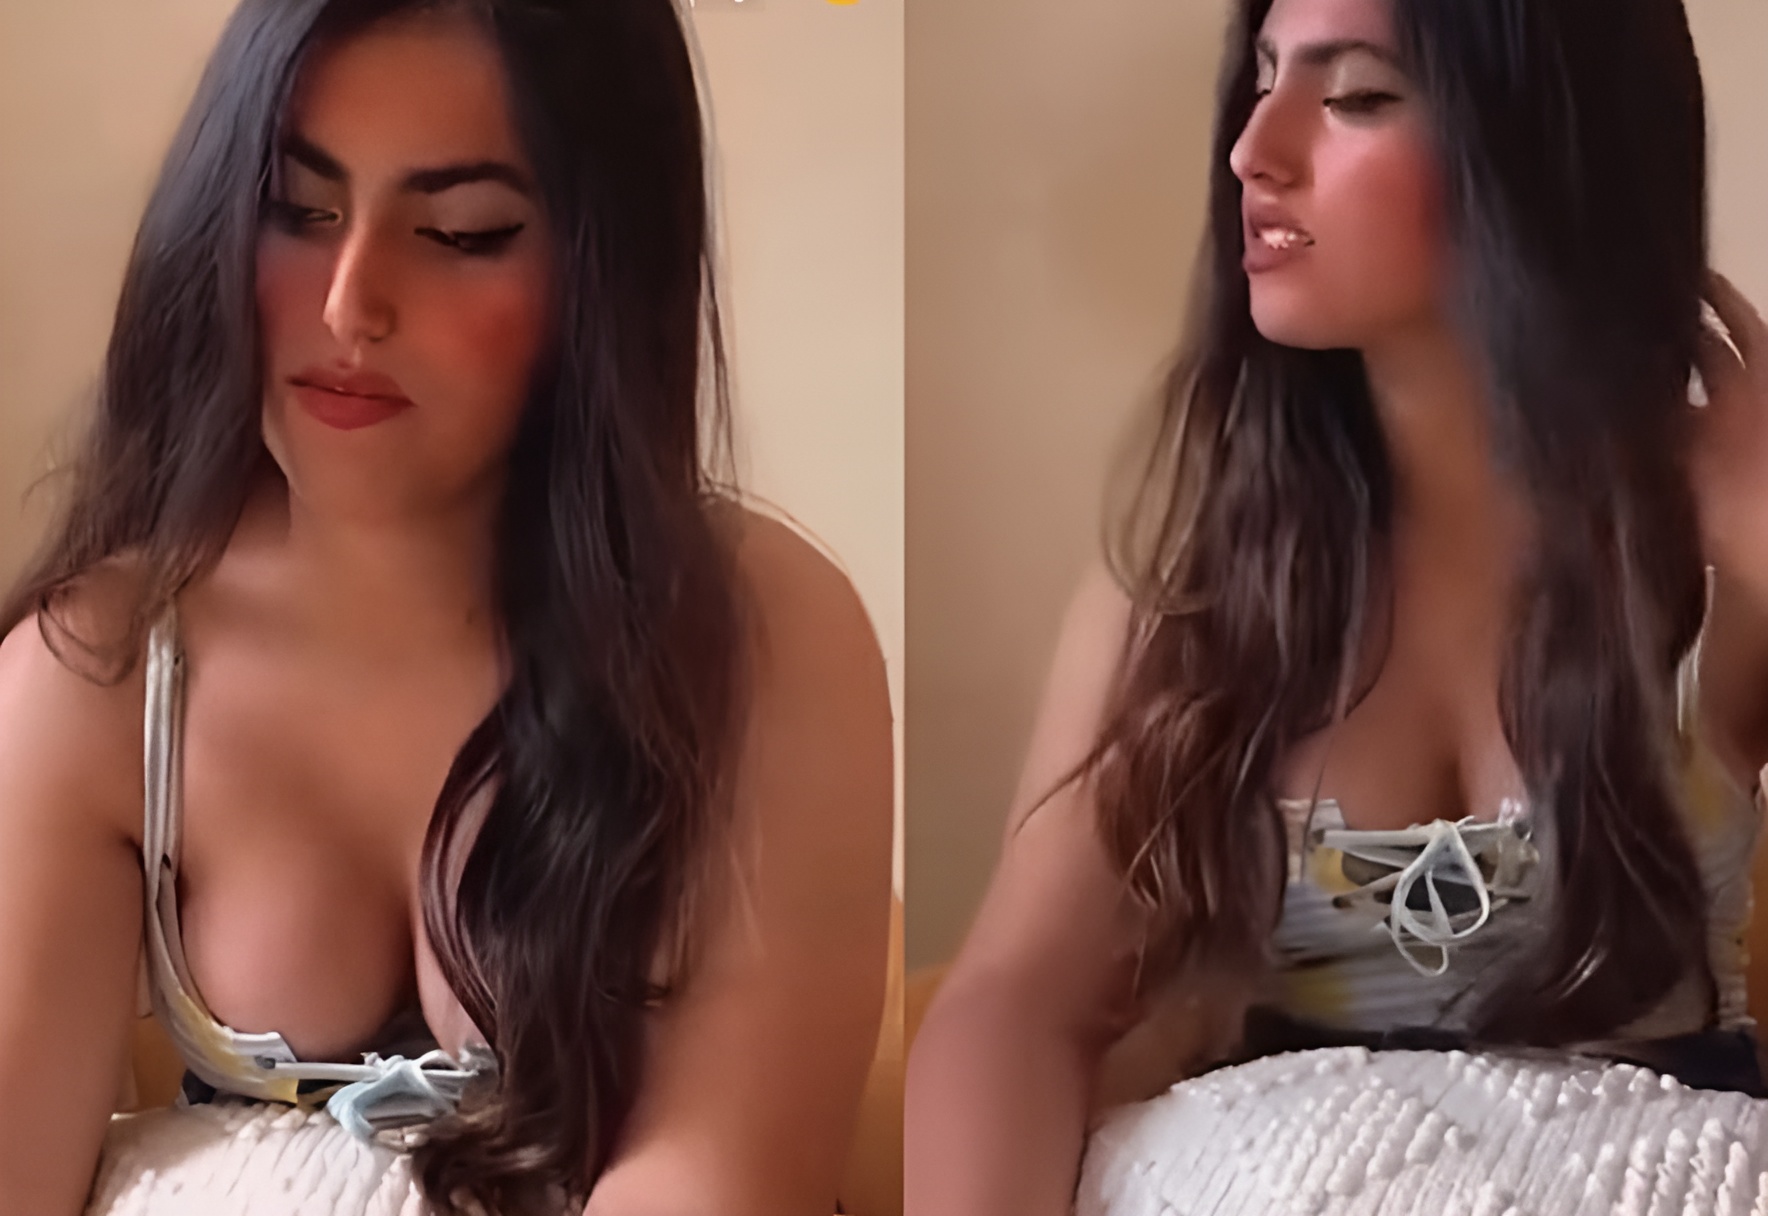 عرض جنسي لابنة هند القحطاني في إعلان للبخور (شاهد) ترفية